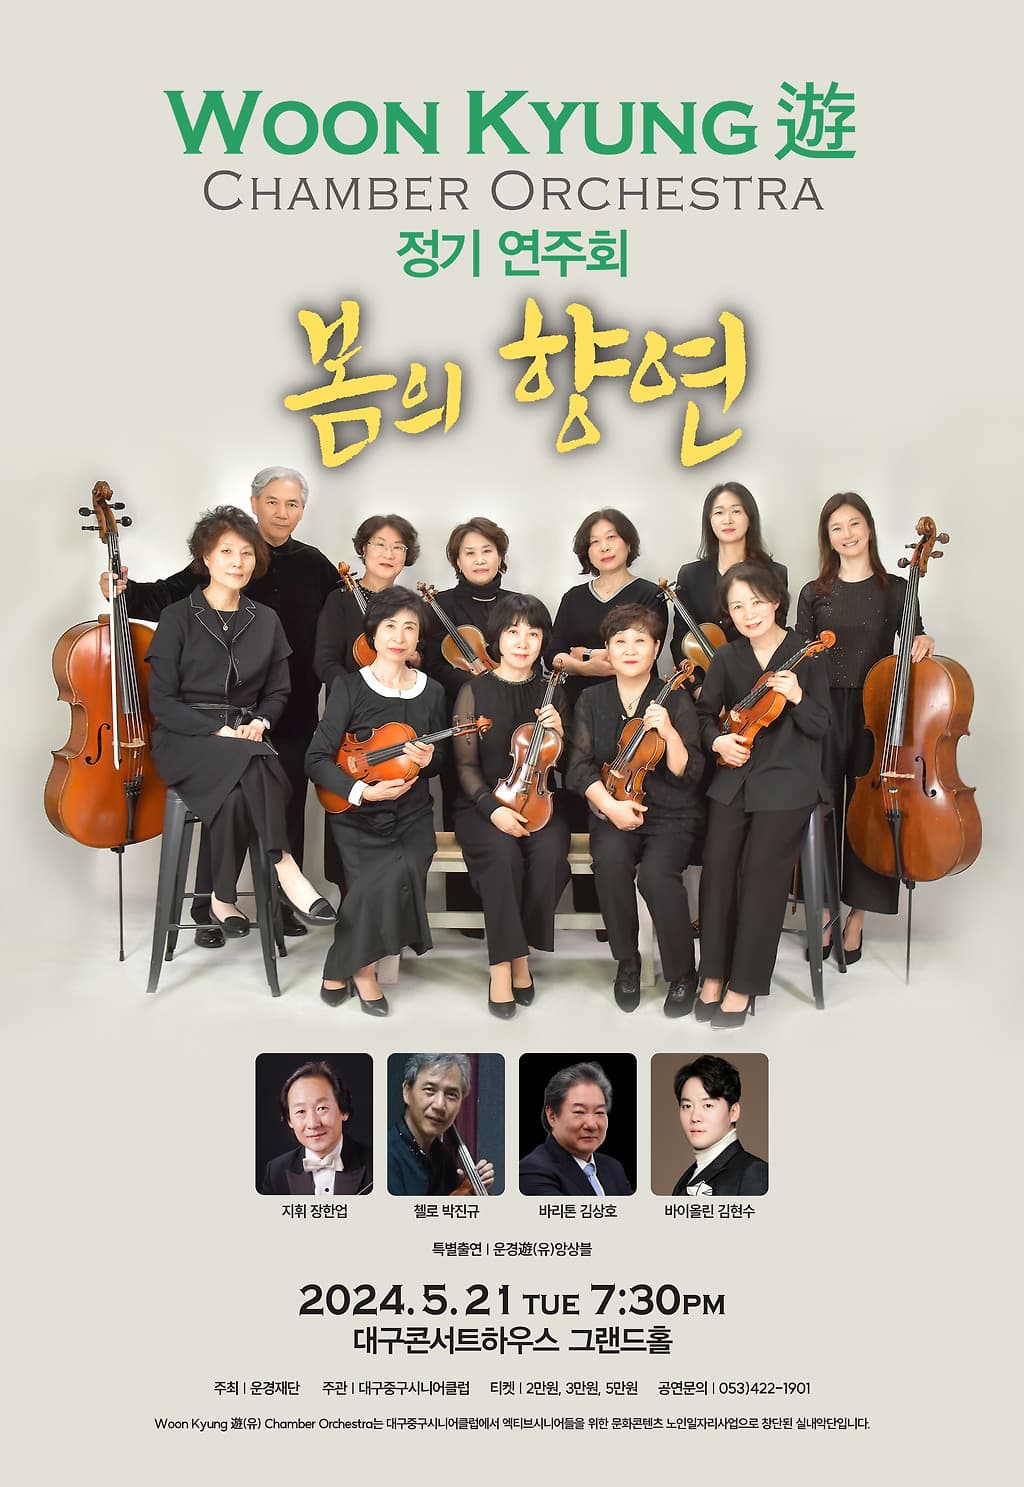 [대구] Woon Kyung 遊 CHAMBER ORCHESTRA 정기연주회